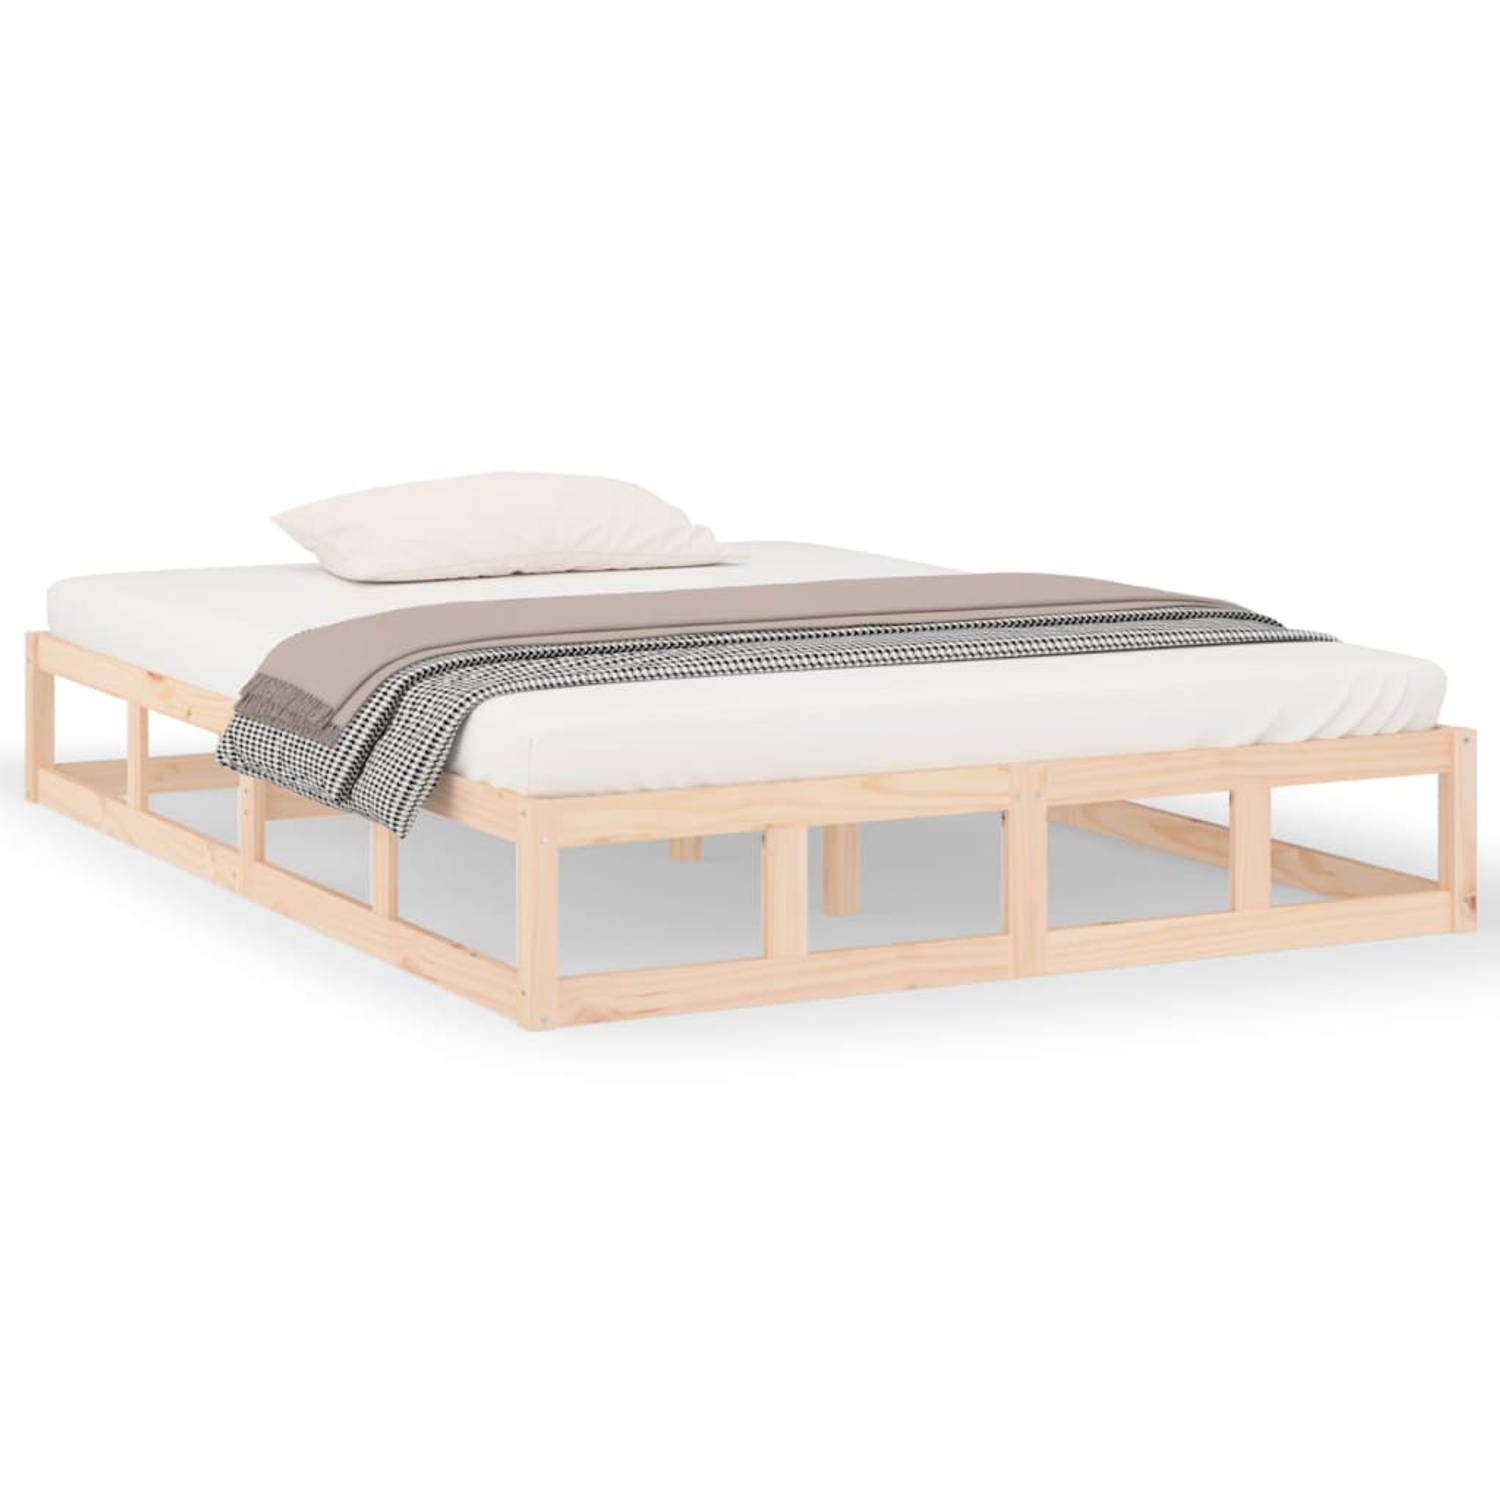 The Living Store Bedframe massief hout 140x190 cm - Bedframe - Bedframes - Bed - Bedbodem - Ledikant - Bed Frame - Massief Houten Bedframe - Slaapmeubel - Tweepersoonsbed - Bedden